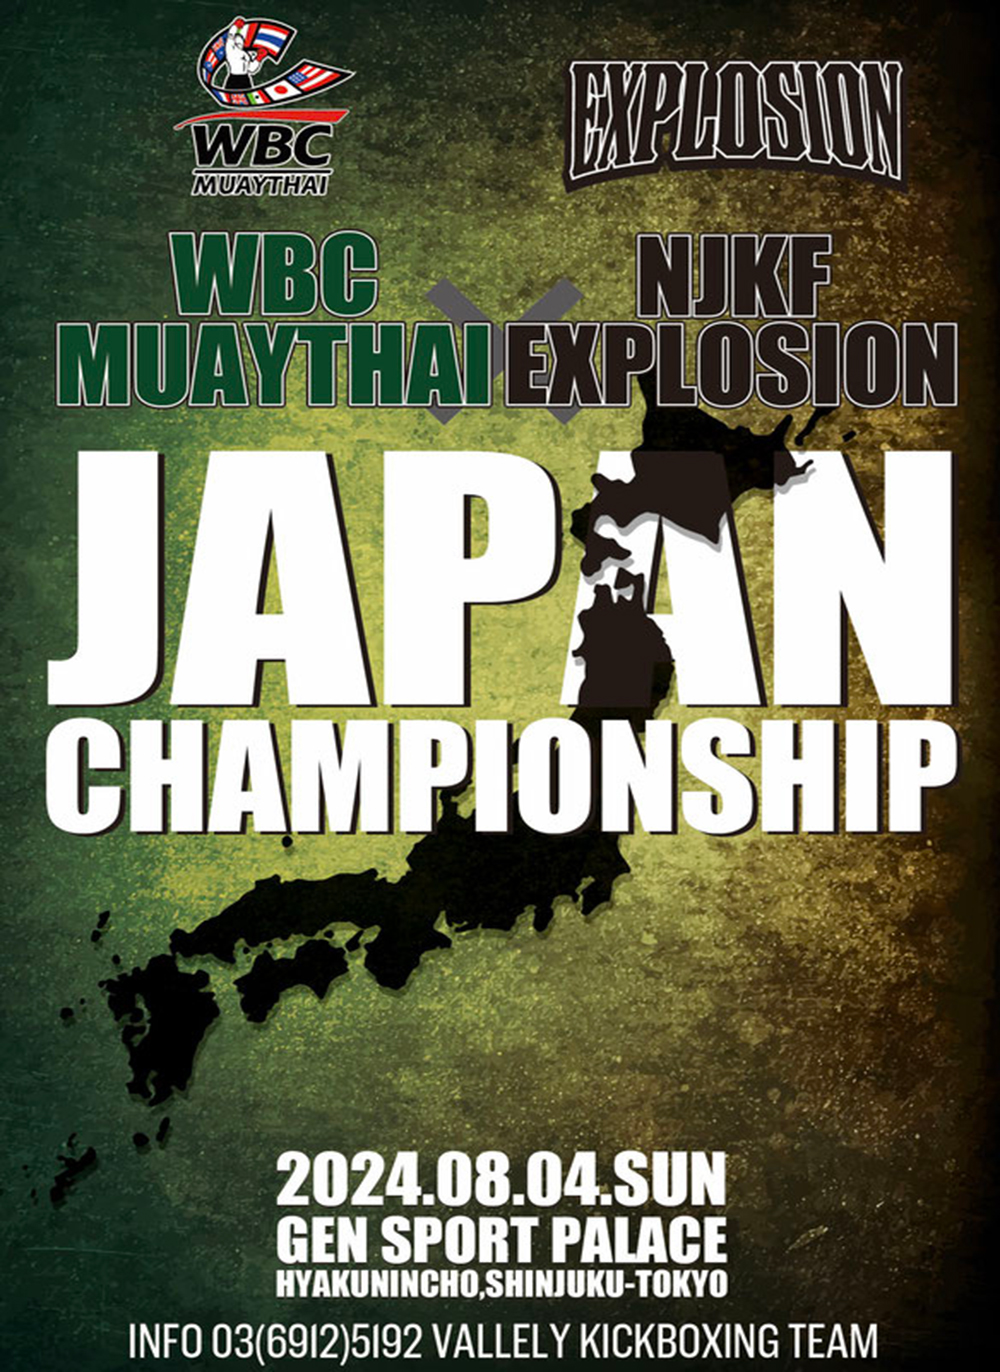 WBC MUAYTHAI JAPAN CHAMPION SHIP